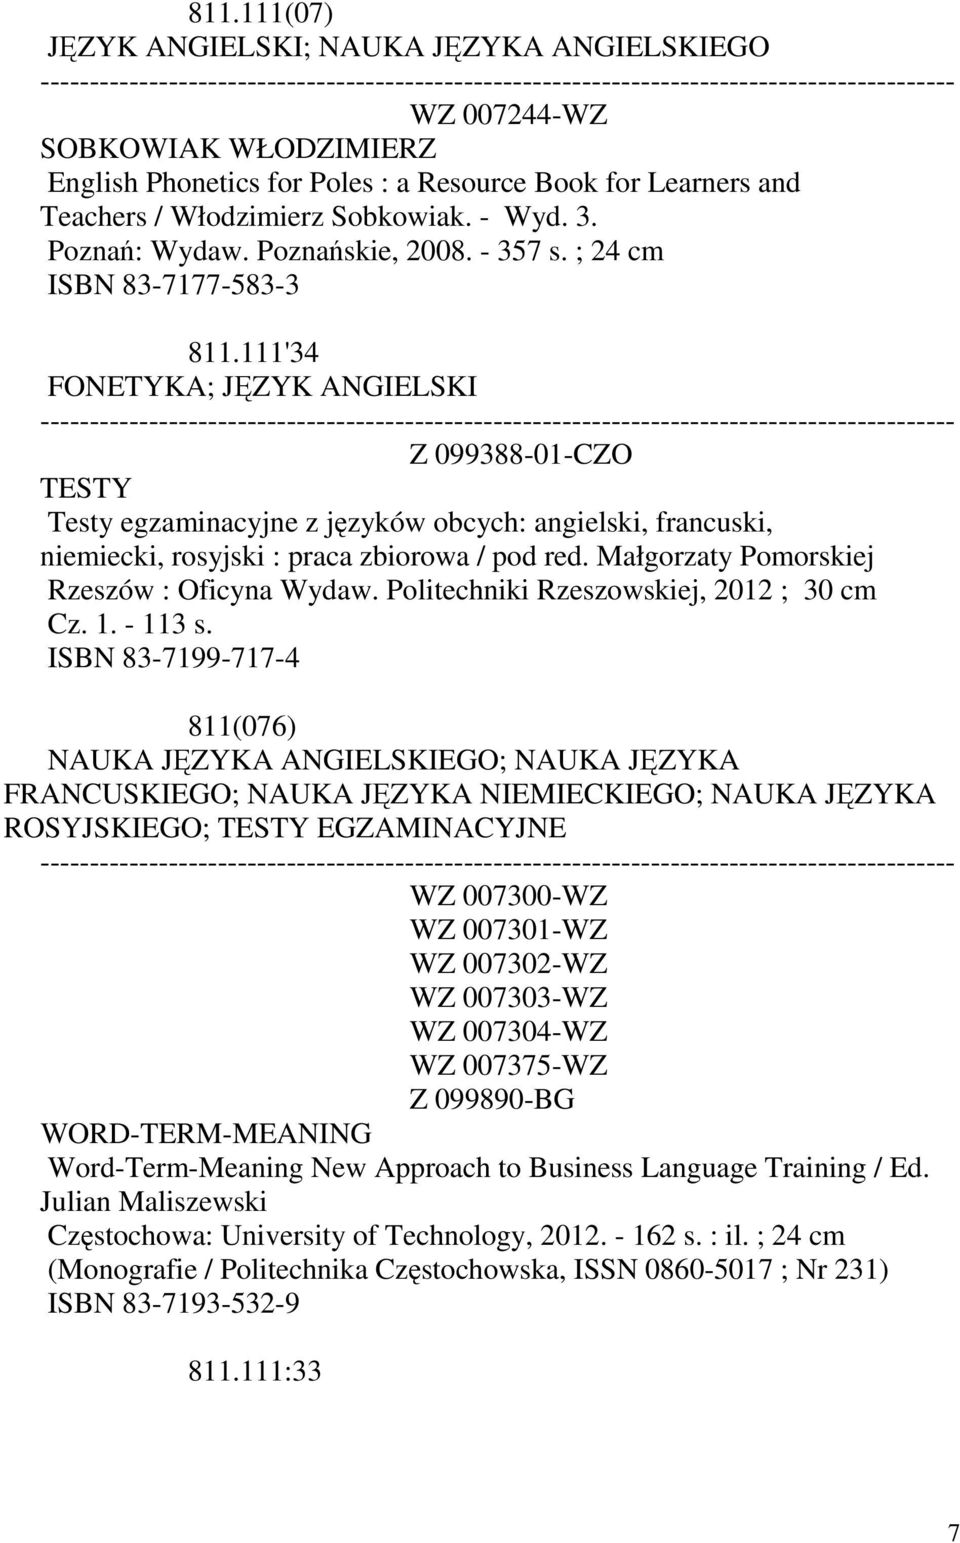 Małgorzaty Pomorskiej Rzeszów : Oficyna Wydaw. Politechniki Rzeszowskiej, 2012 ; 30 cm Cz. 1. - 113 s.